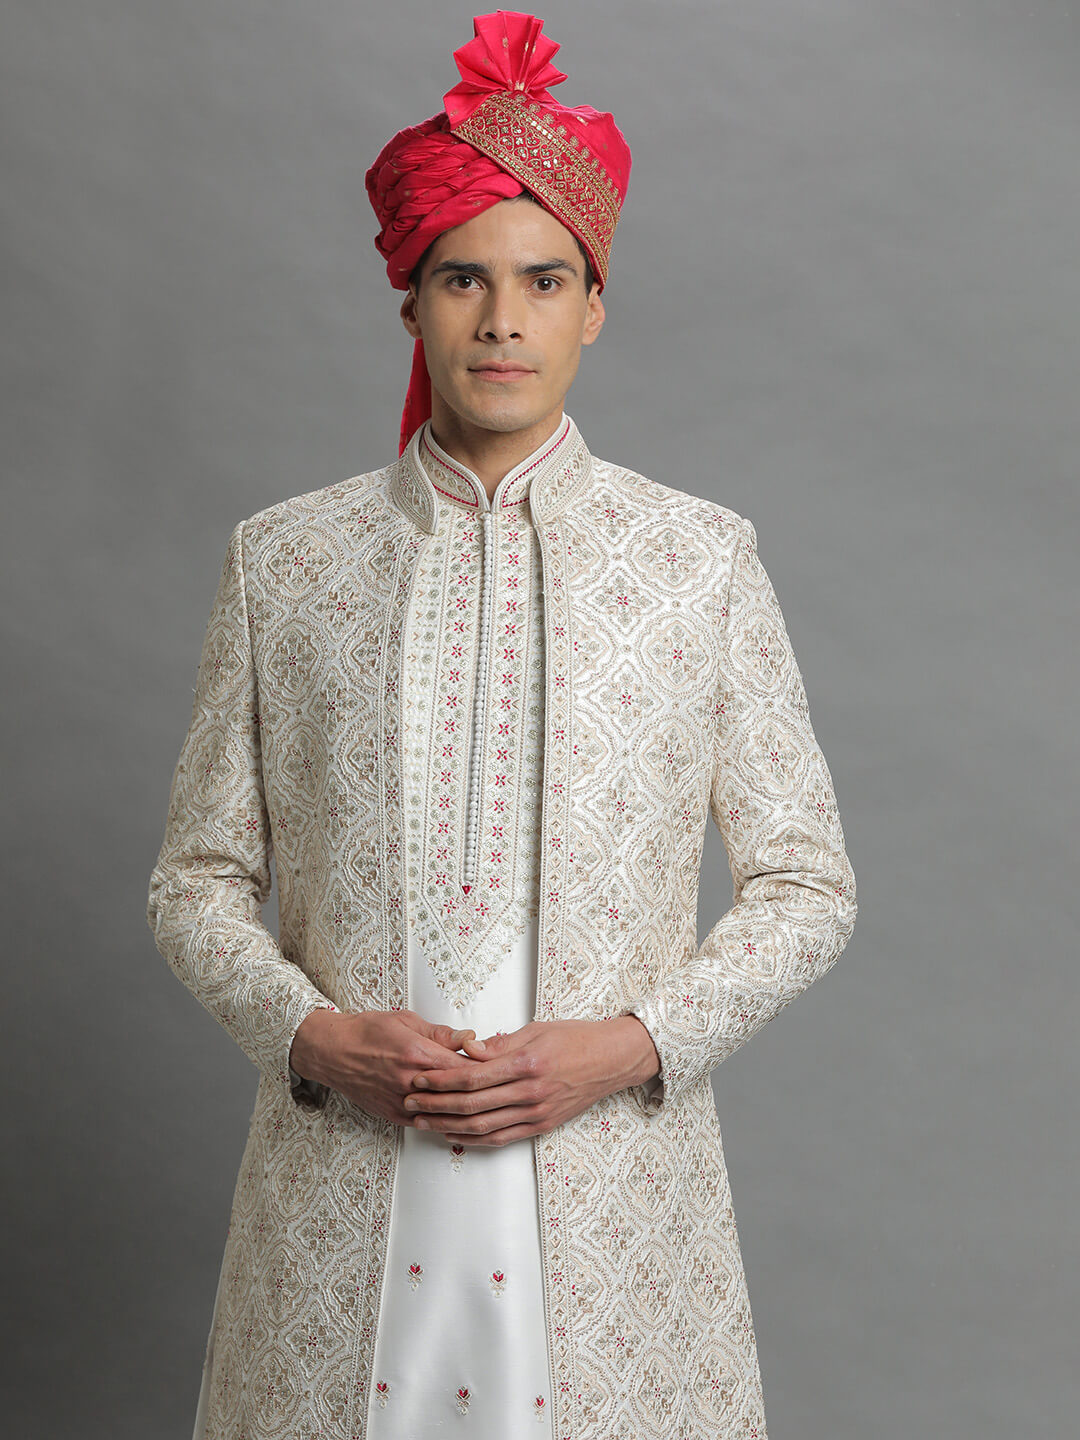 cream-jacket-style-embroidered-sherwani